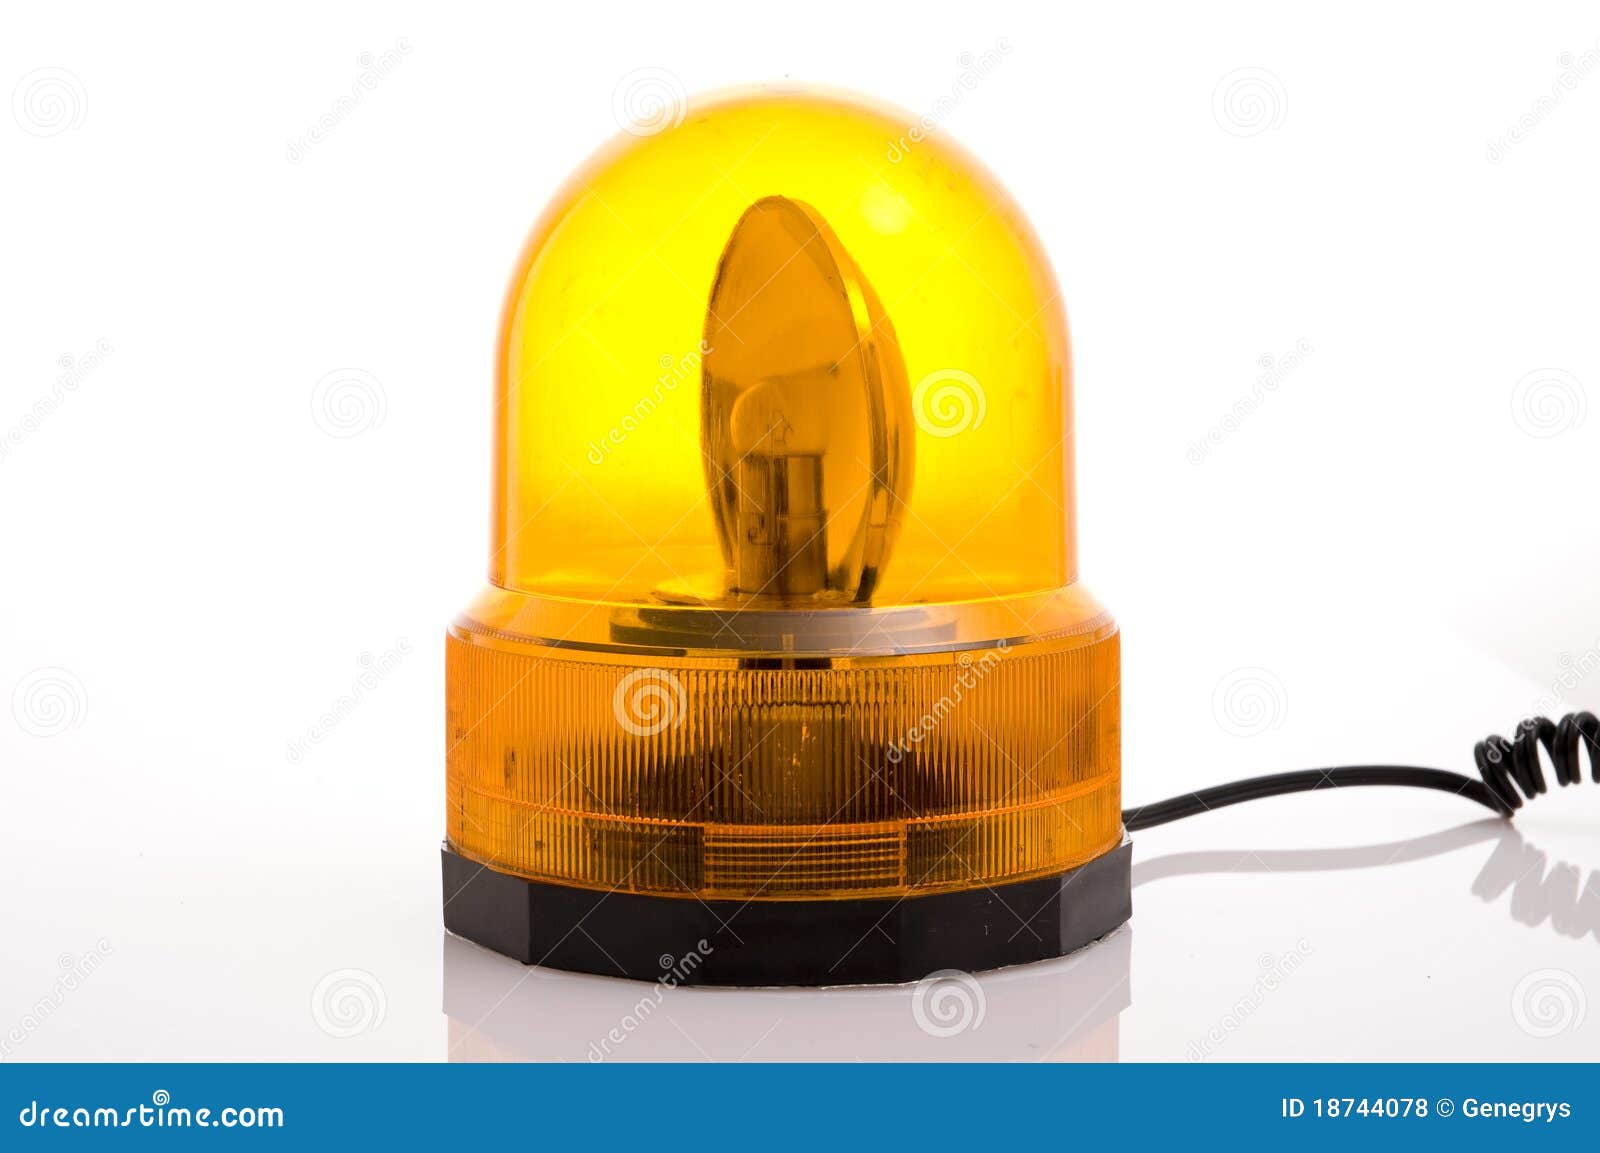 Emergency flashing lights stock photo. Image of - 18744078